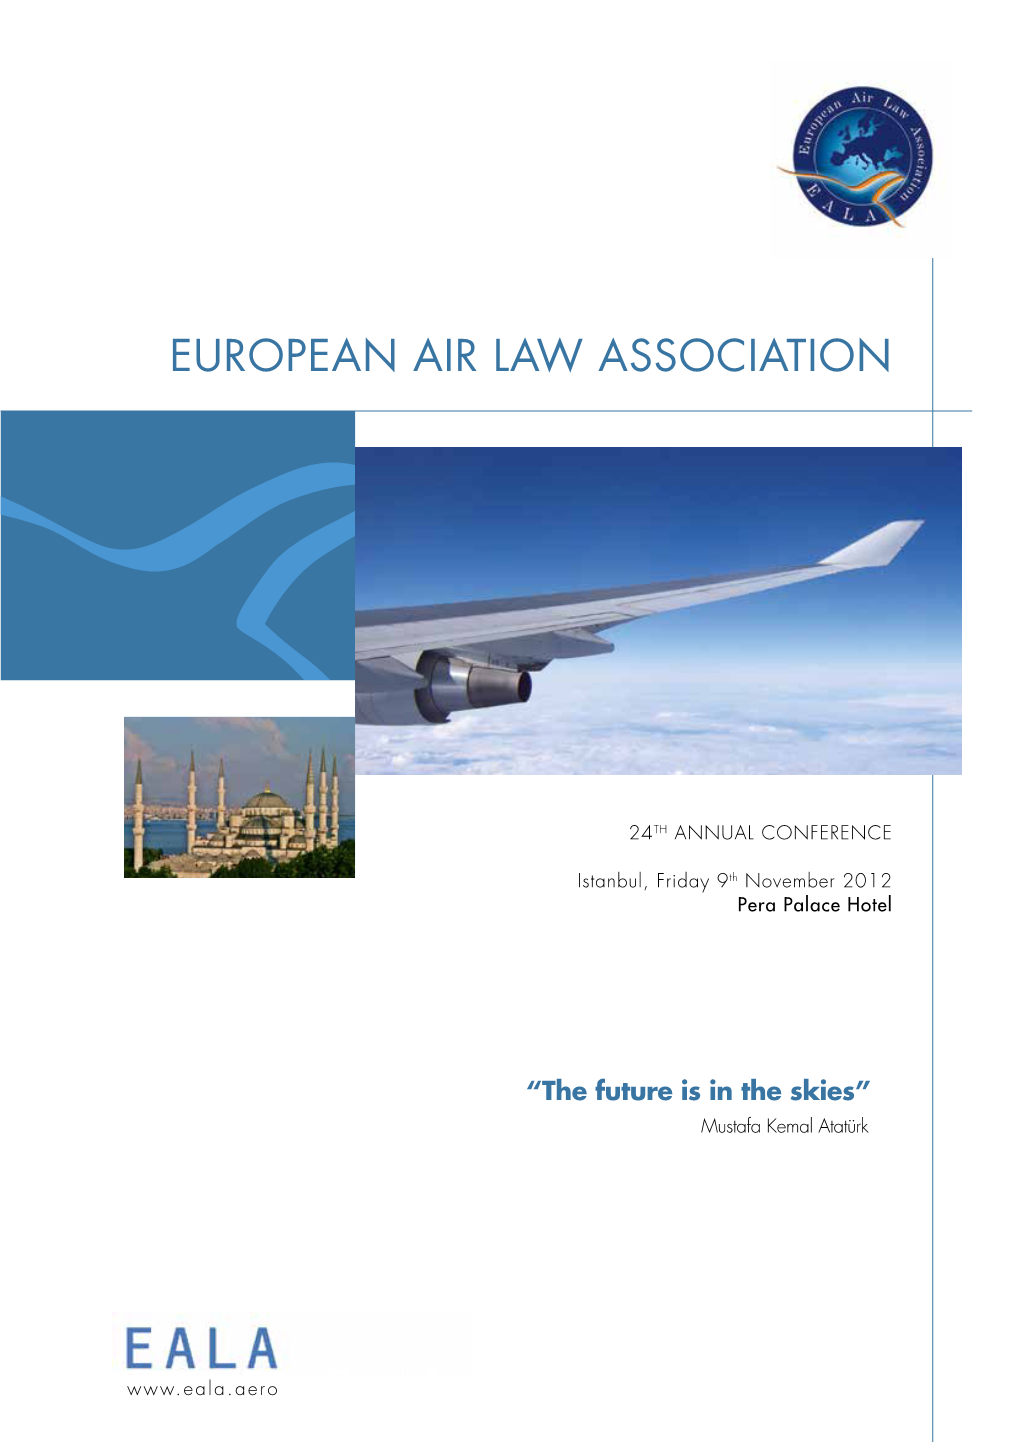 The European Air Law Association